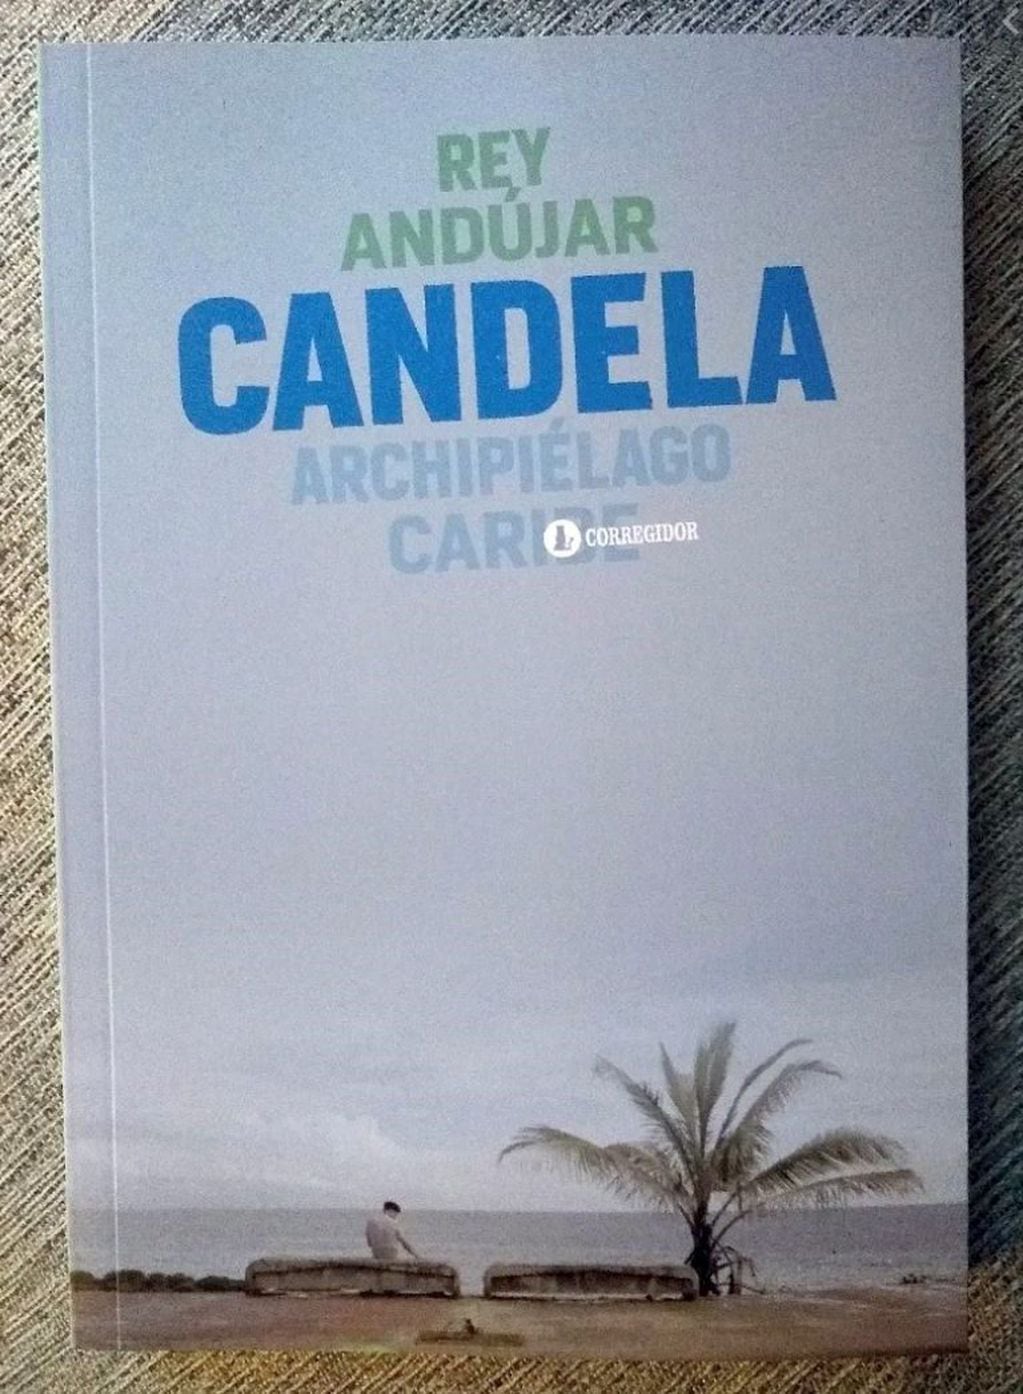 Candela, un inquietante thriller caribeño, por el dominicano Rey Andújar (Federico Lopez Claro)